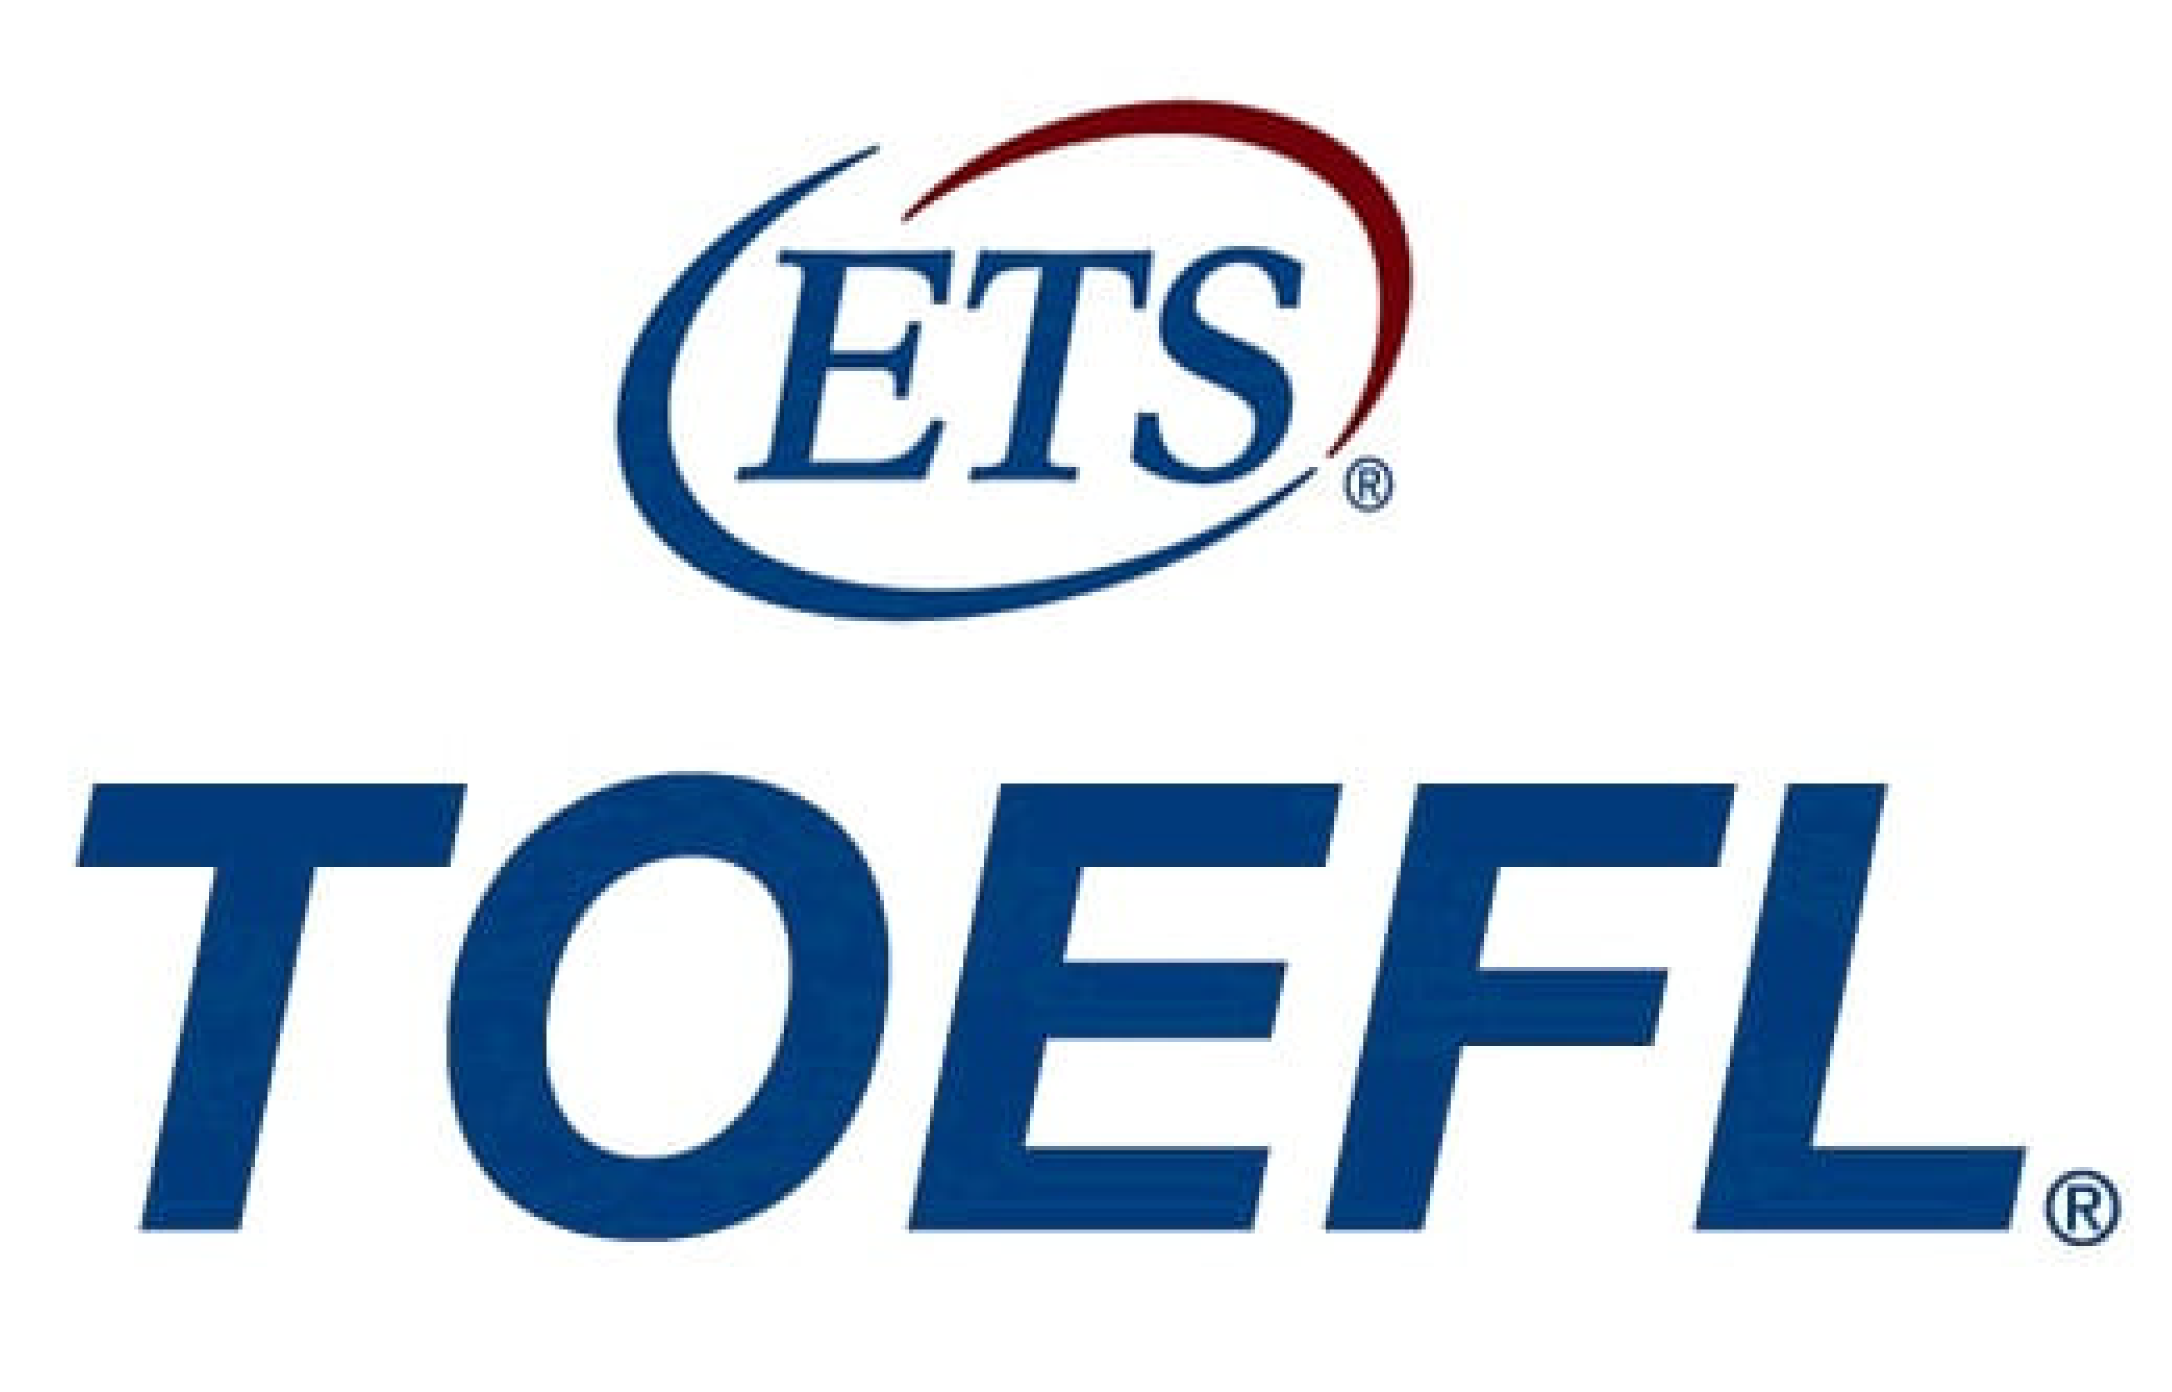 Kursus TOEFL Online